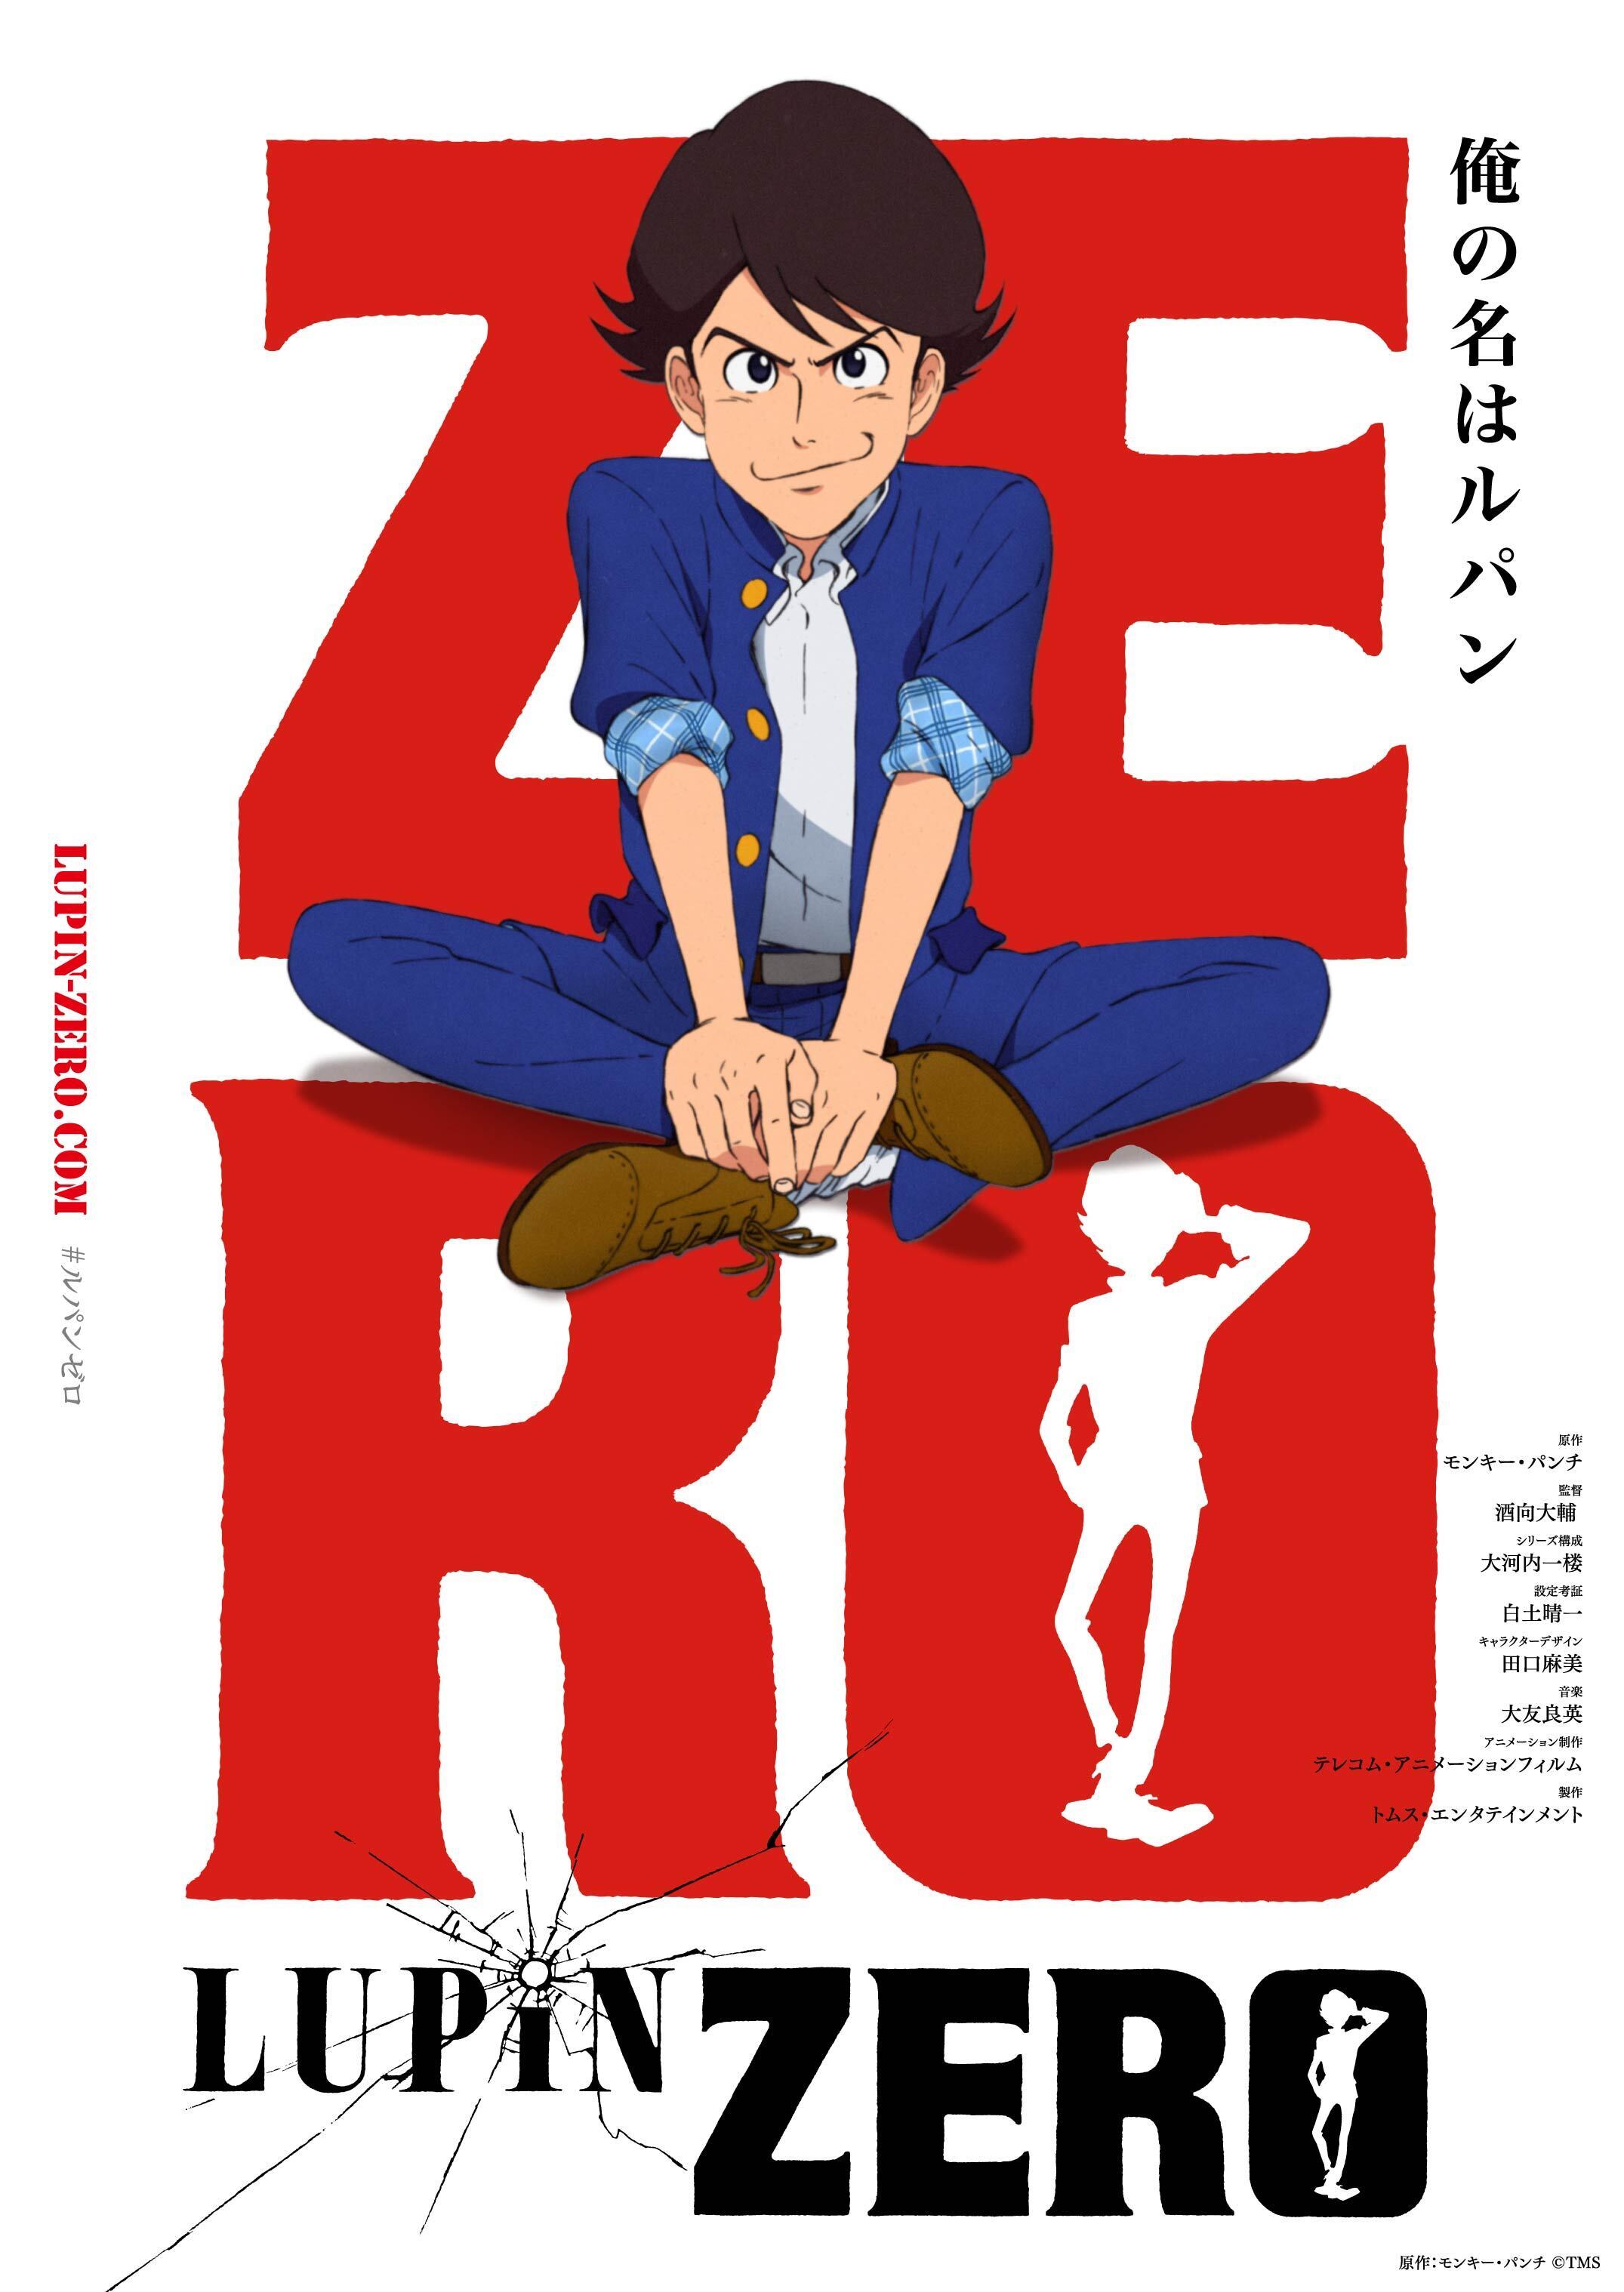 新作アニメ Lupin Zero 22年12月配信決定 アキバ総研